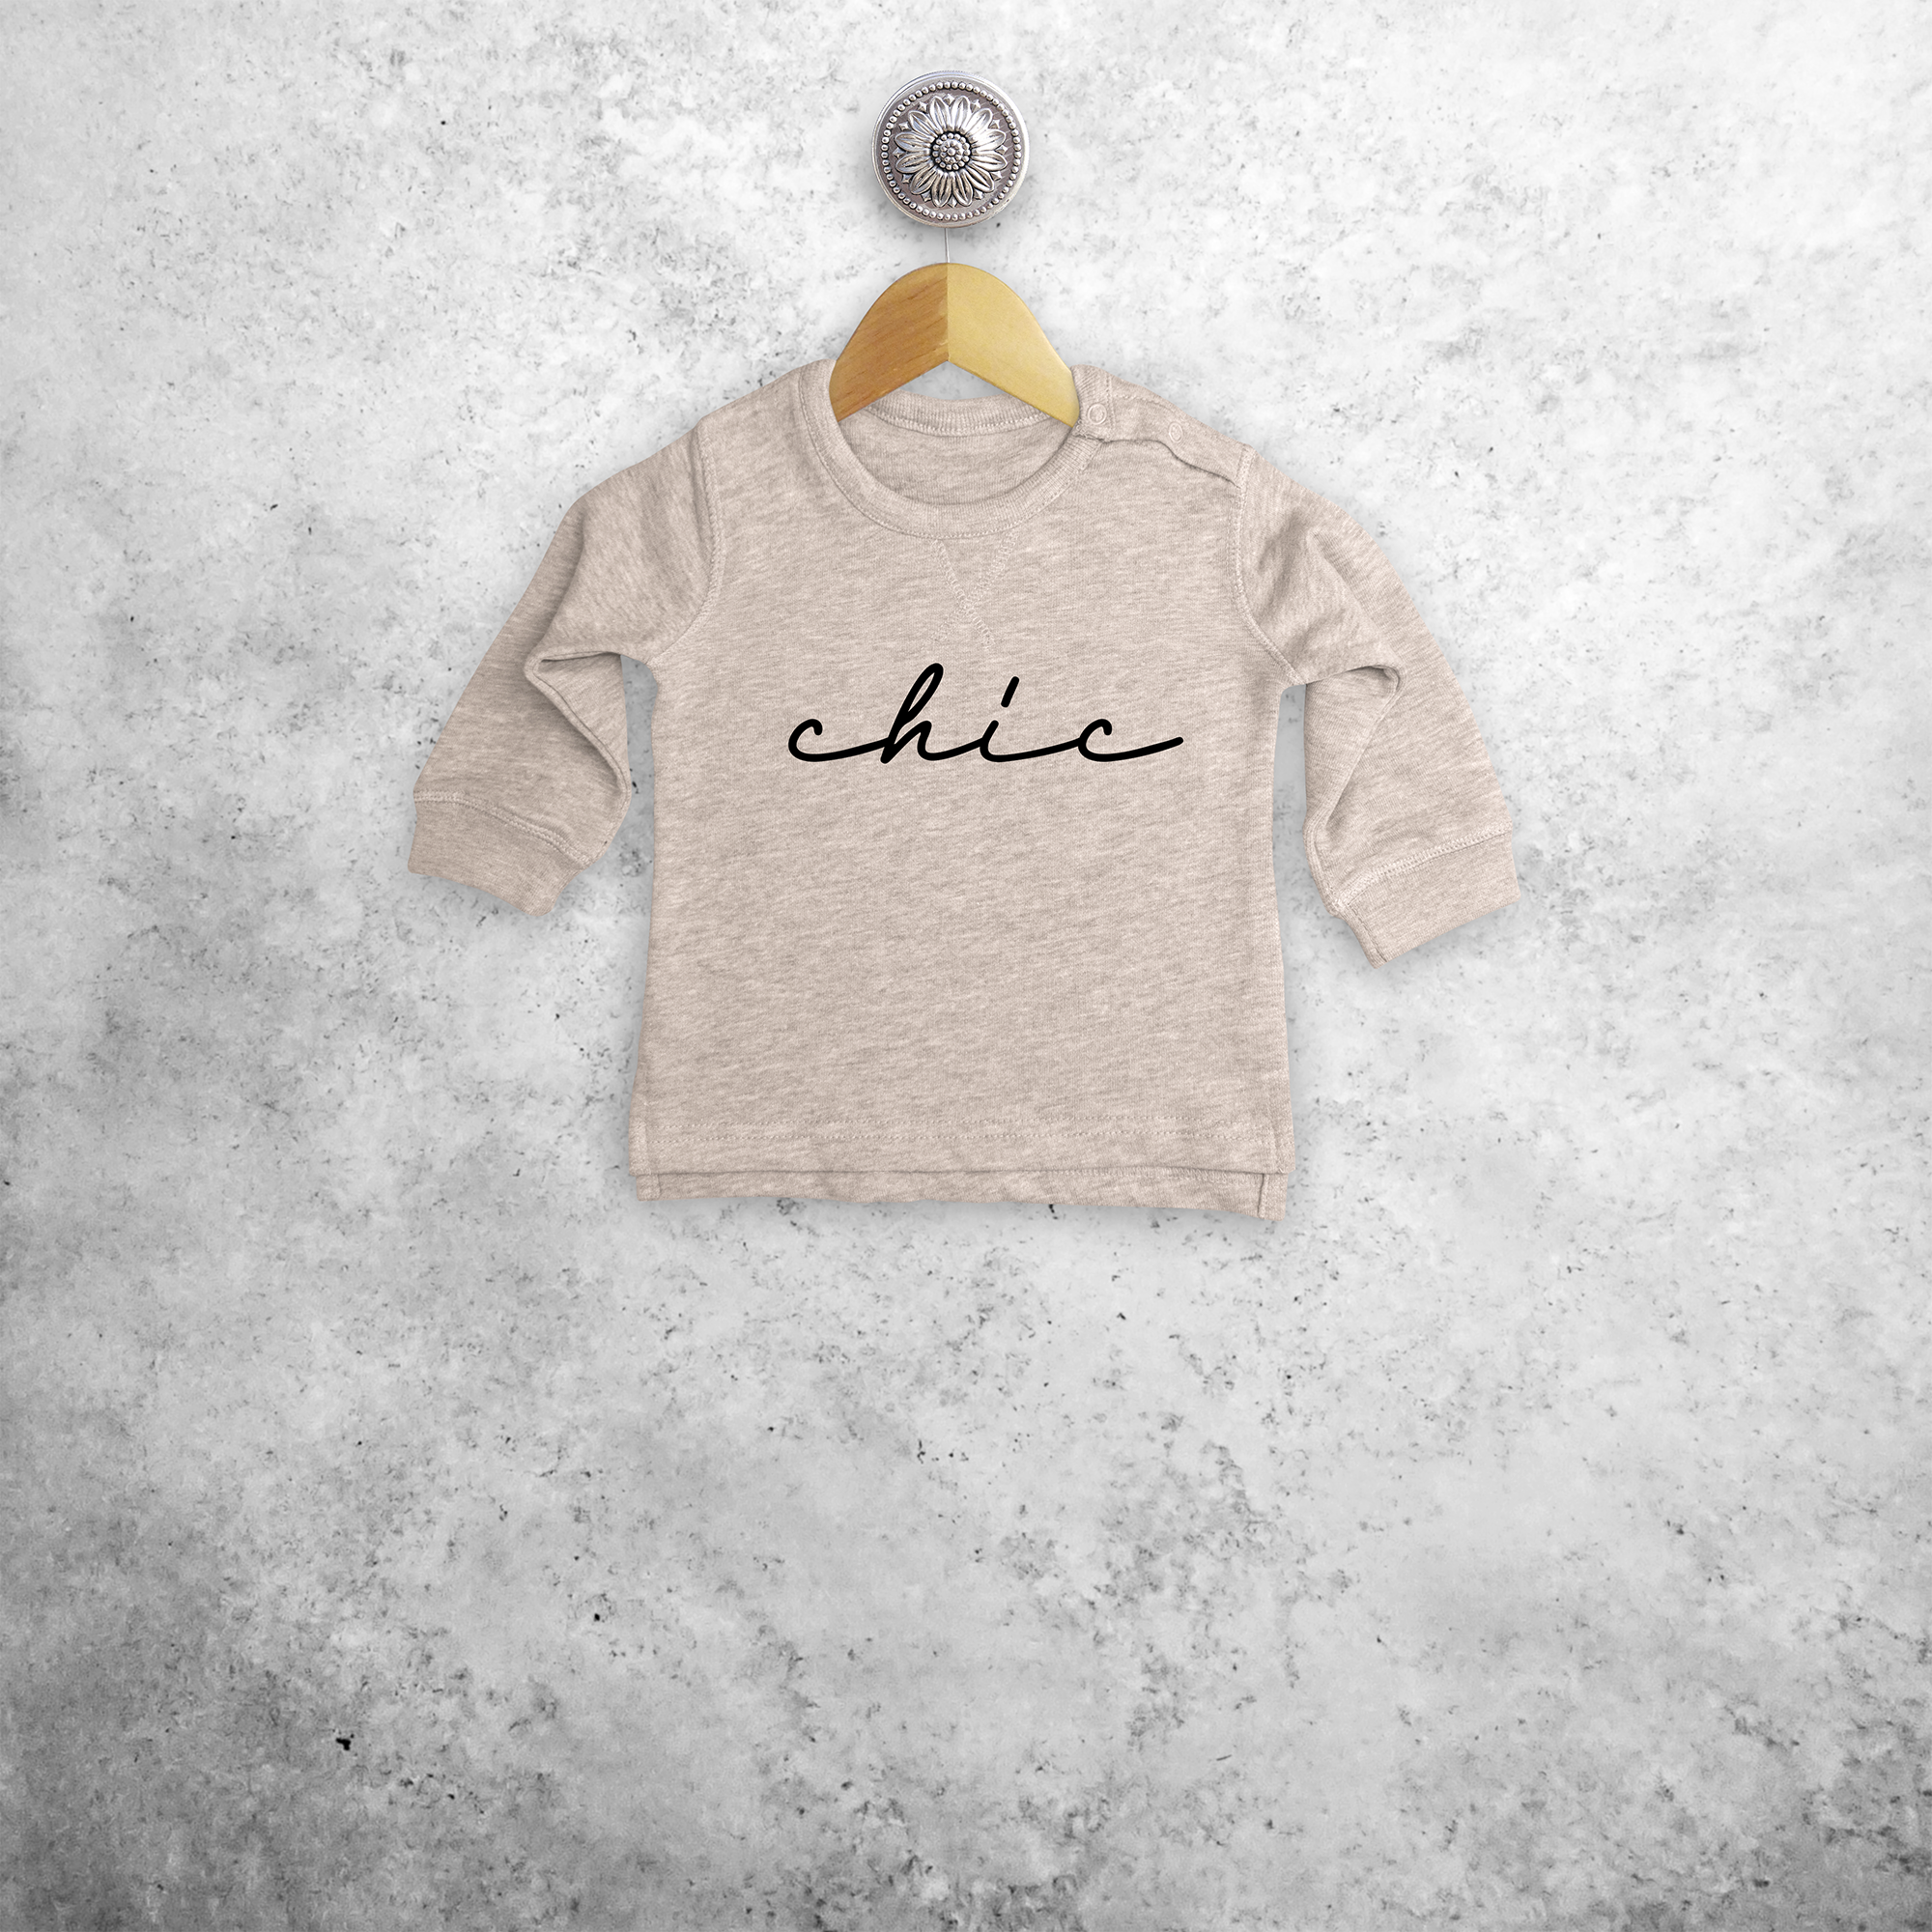 'Chic' baby sweater